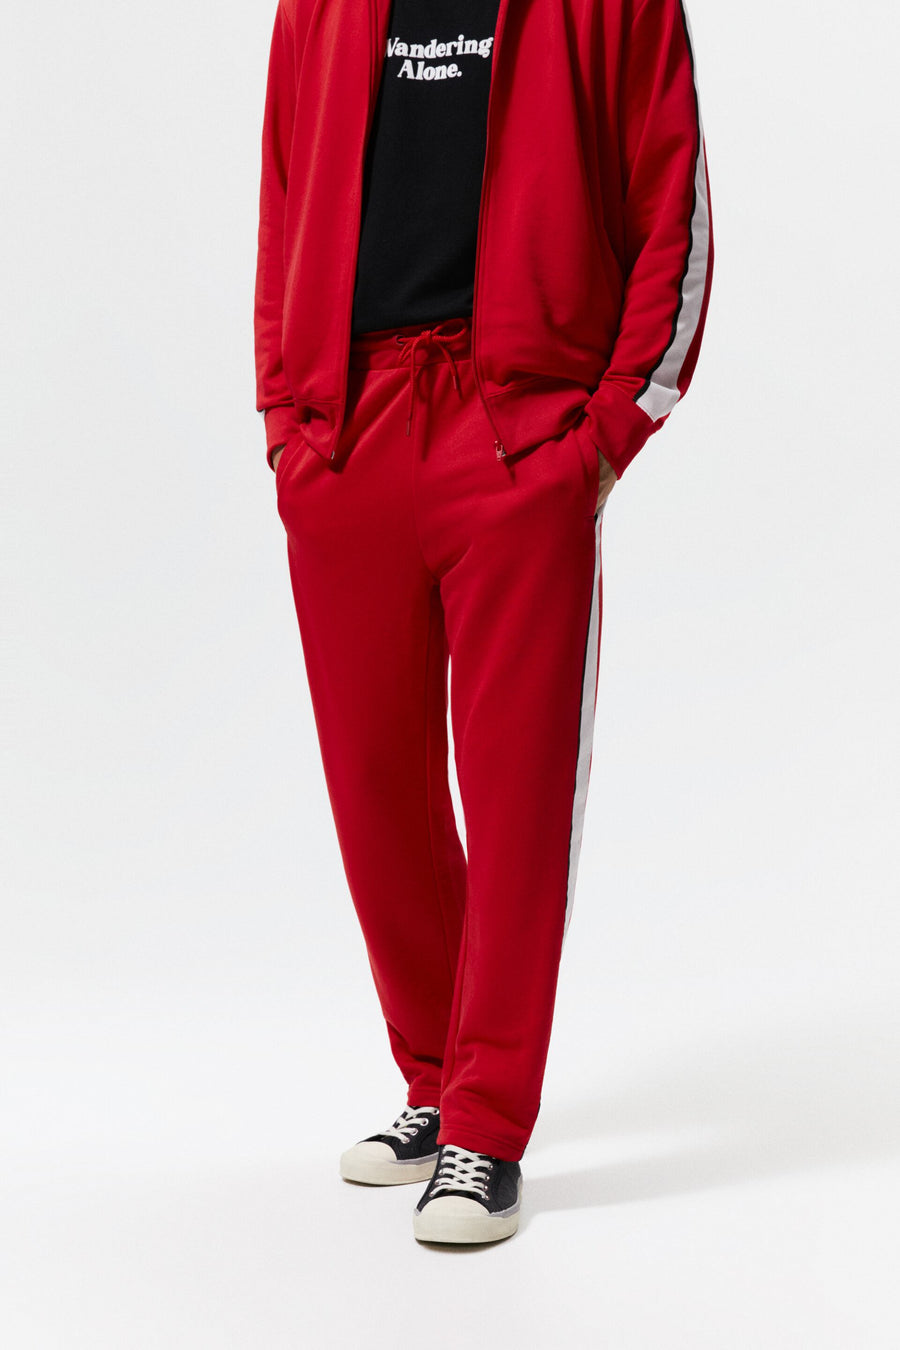 ZaraMan Knitted Jogg L-Terry Trouser 4161/302/600